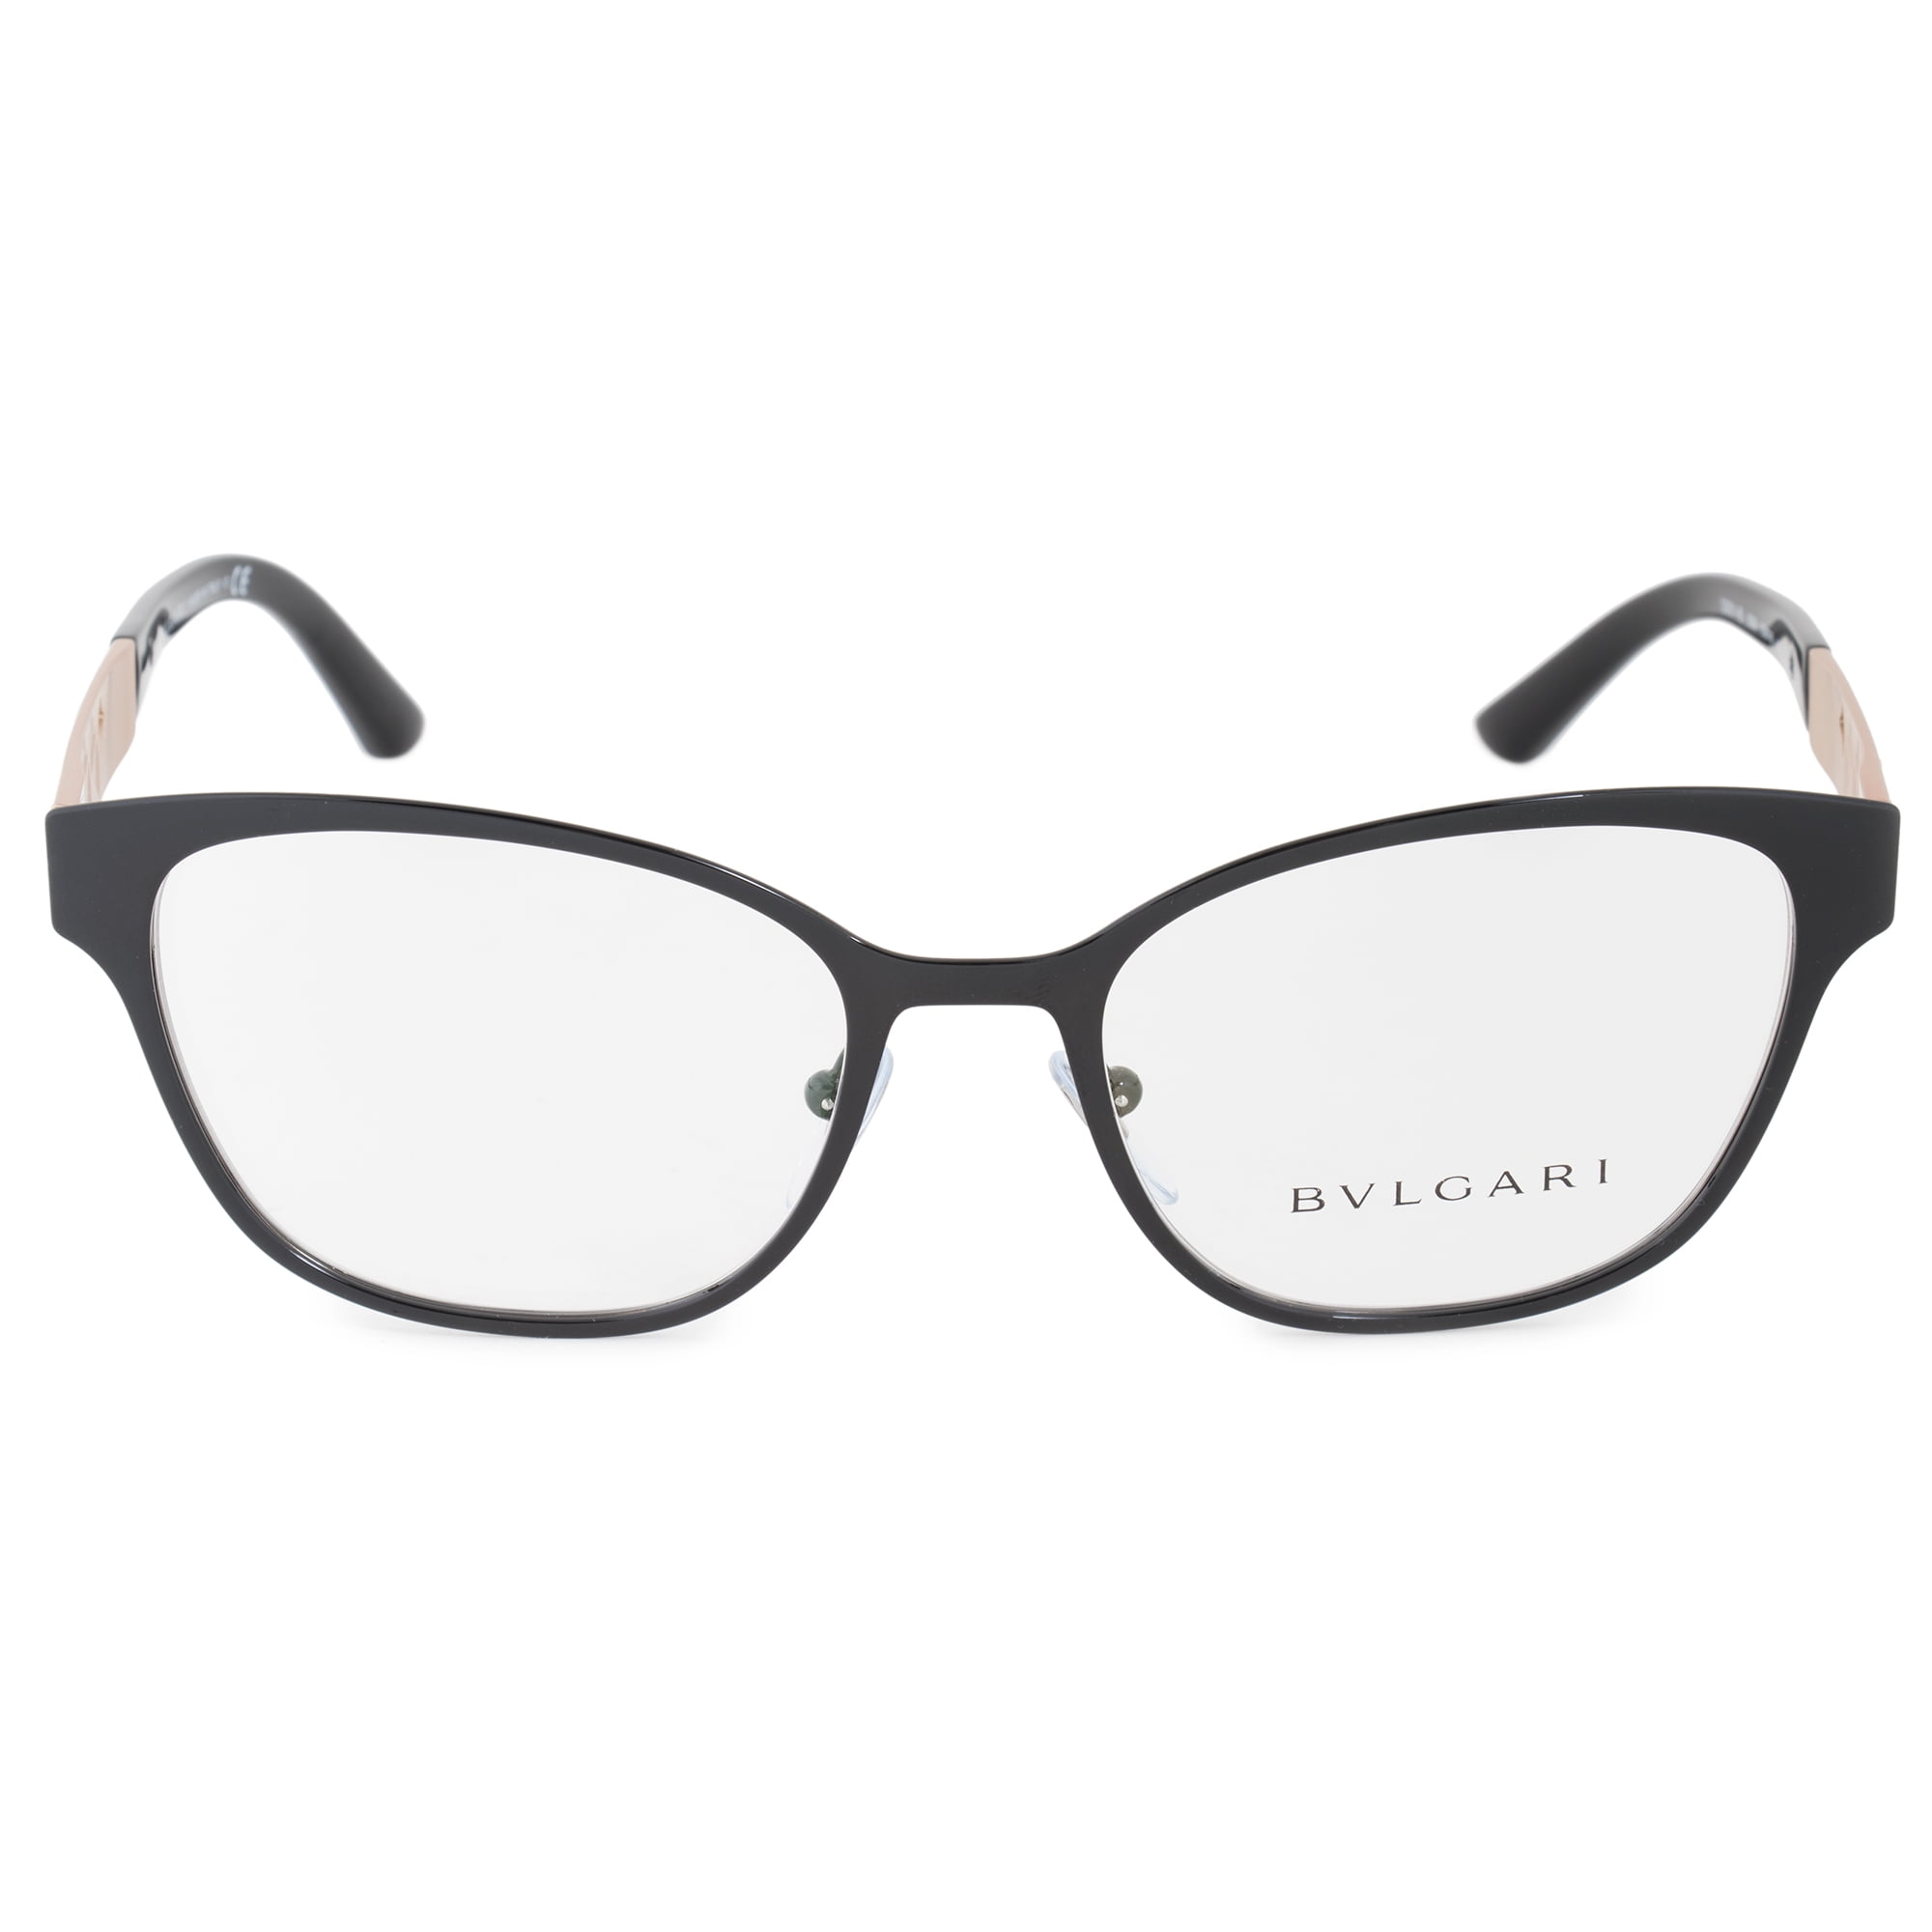 Cat Eye Eyeglasses Frames 